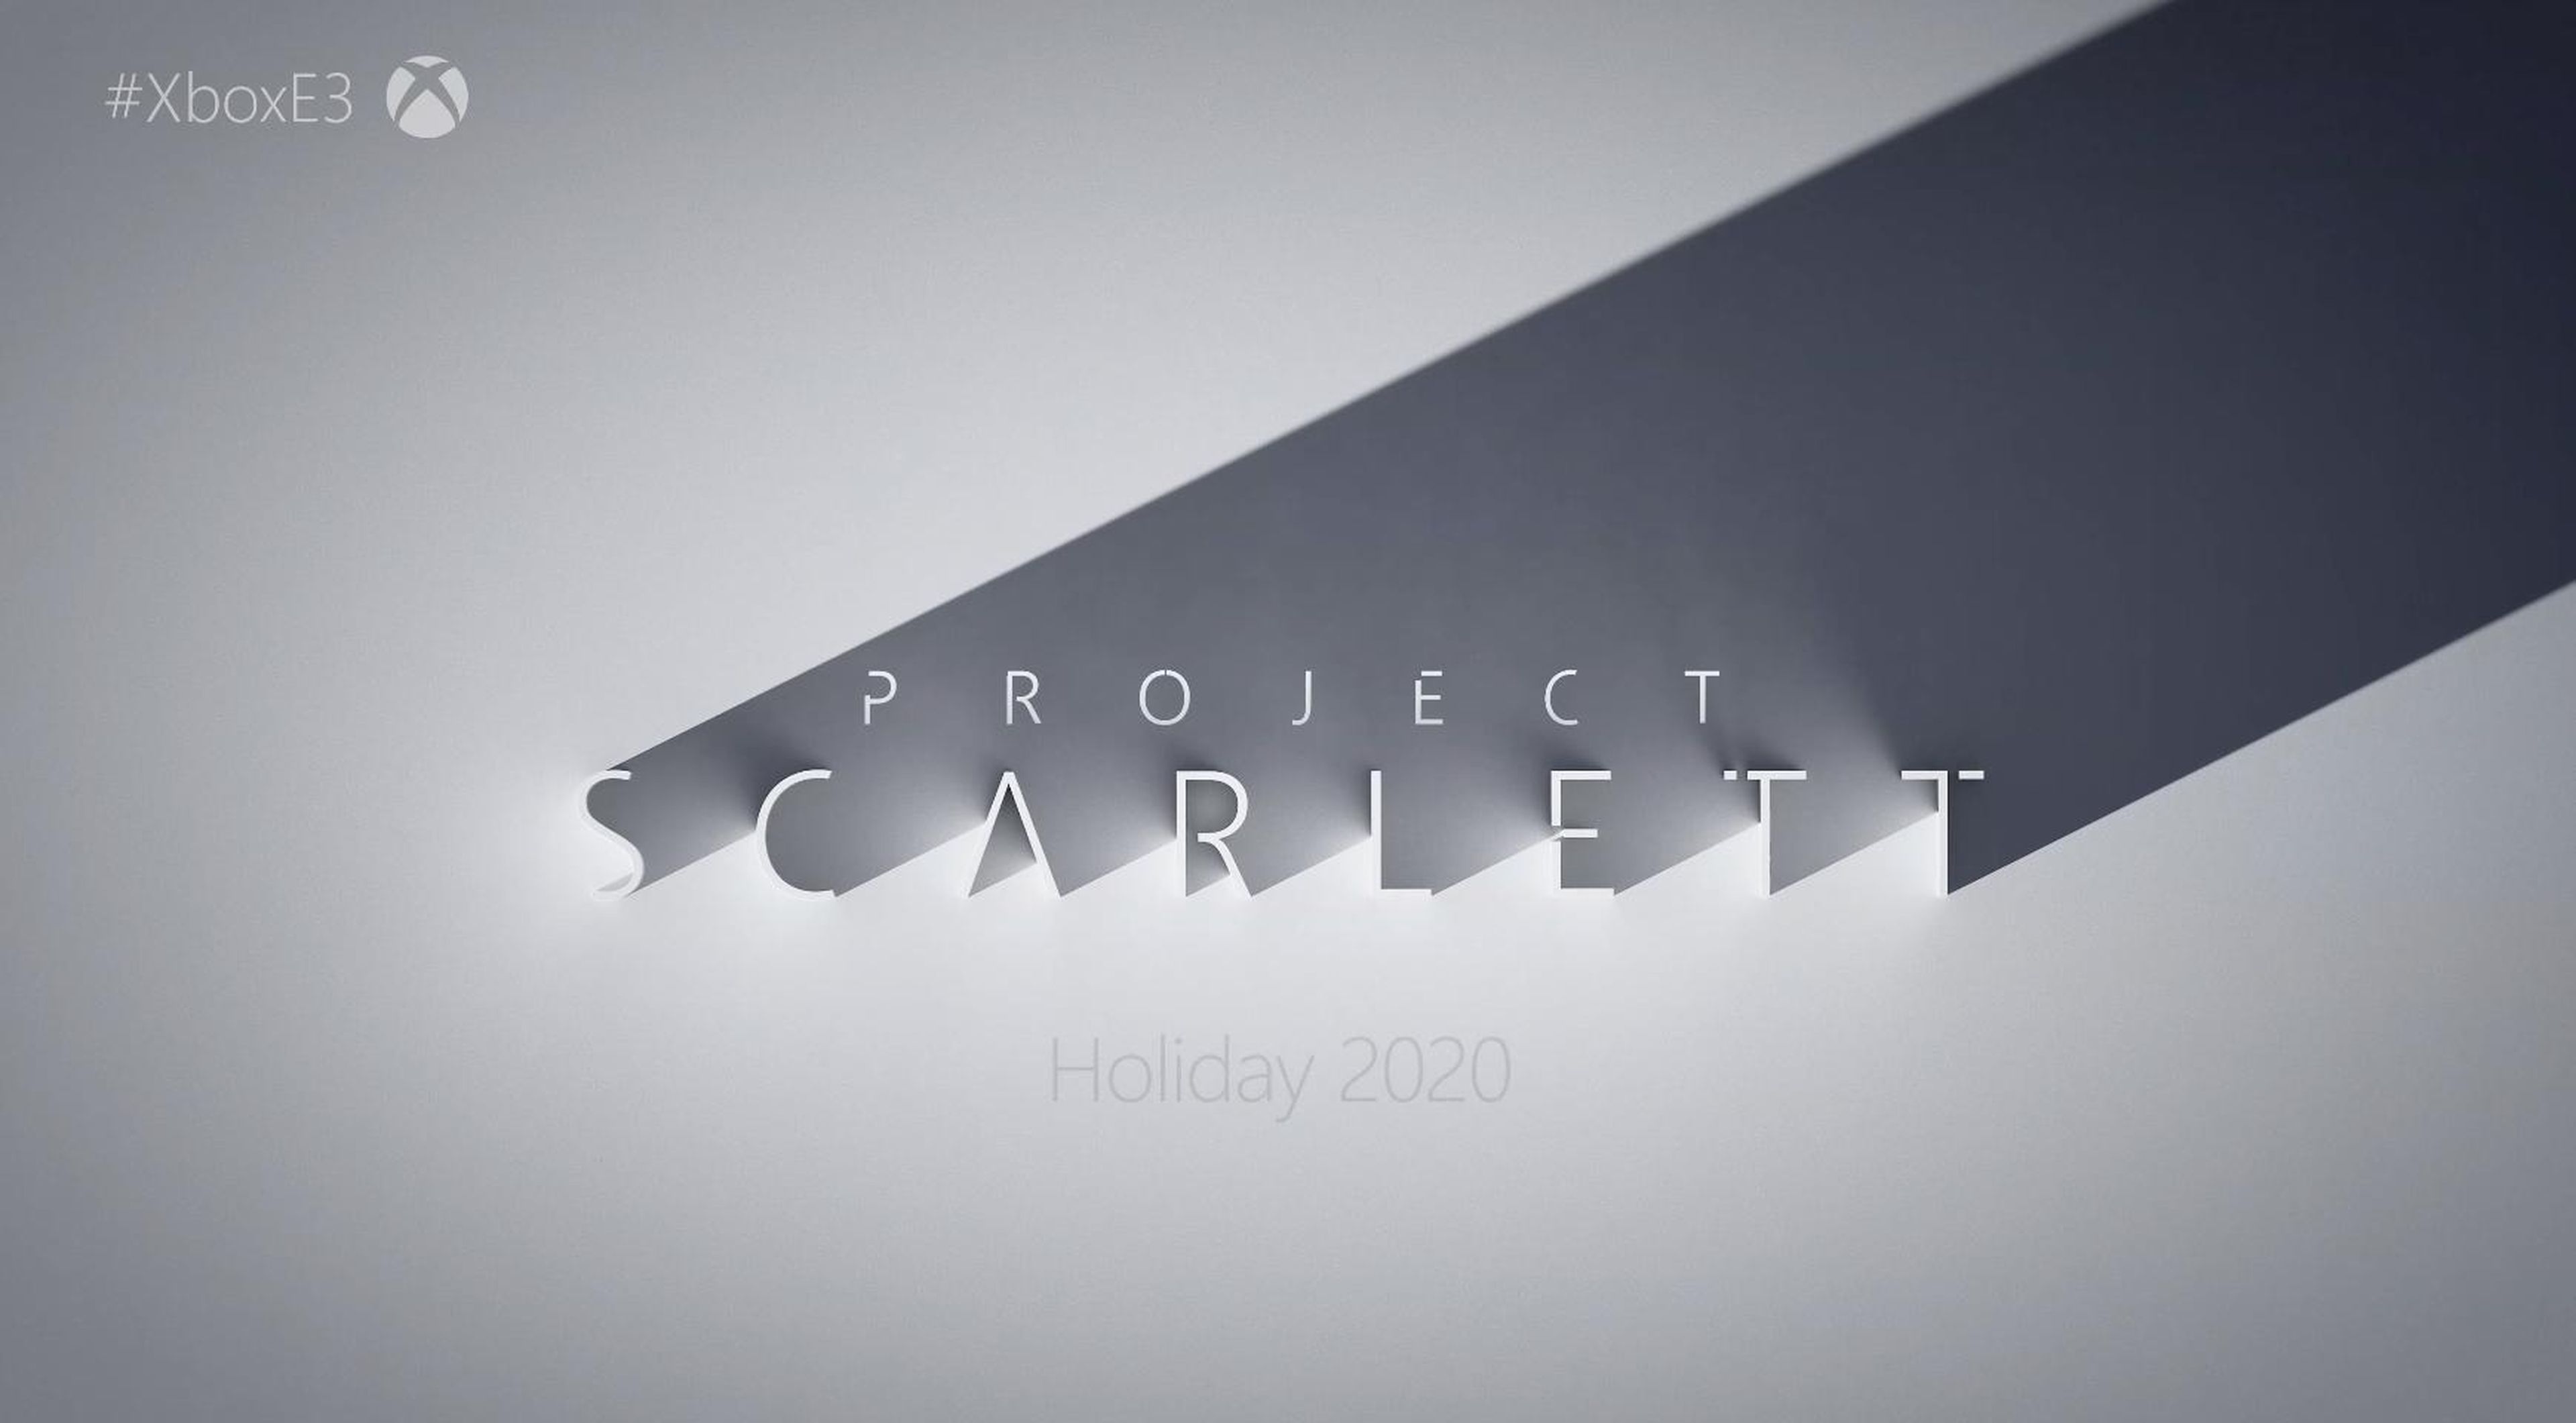 La consola Xbox Project Scarlett de Microsoft llegará en Navidad de 2020 con Halo Infinite